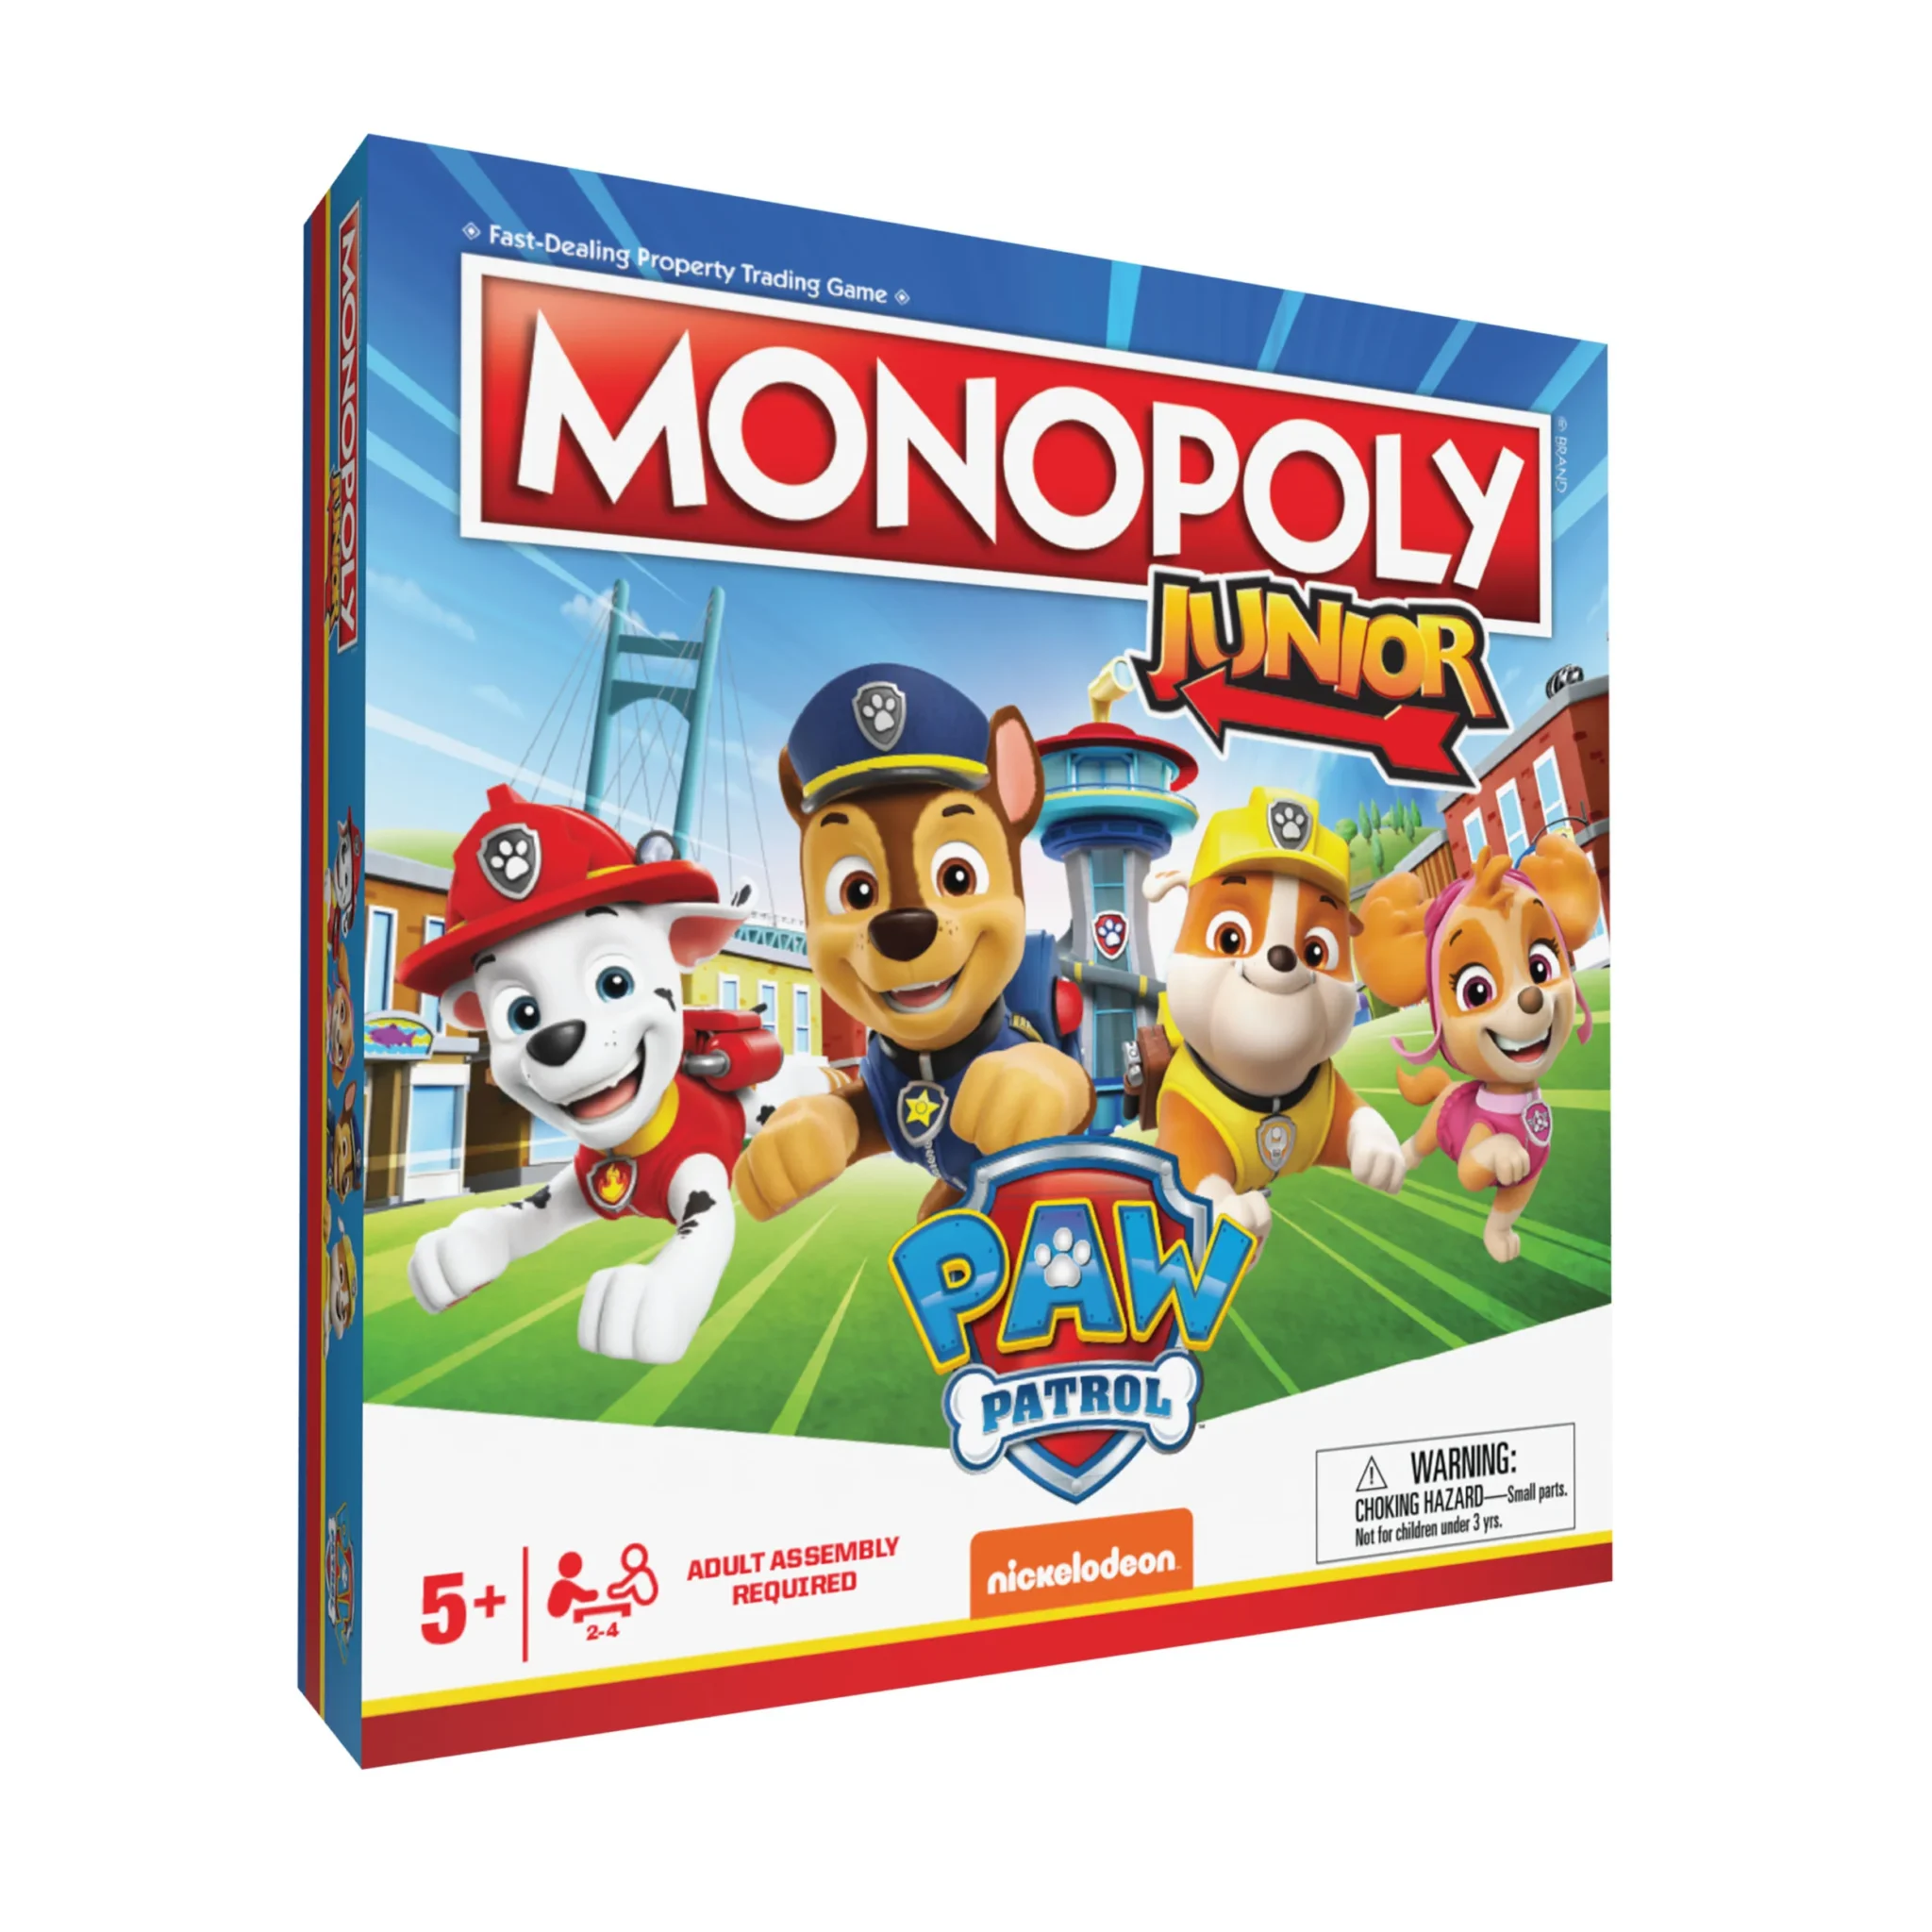 Monopoly Junior: Paw Patrol box art